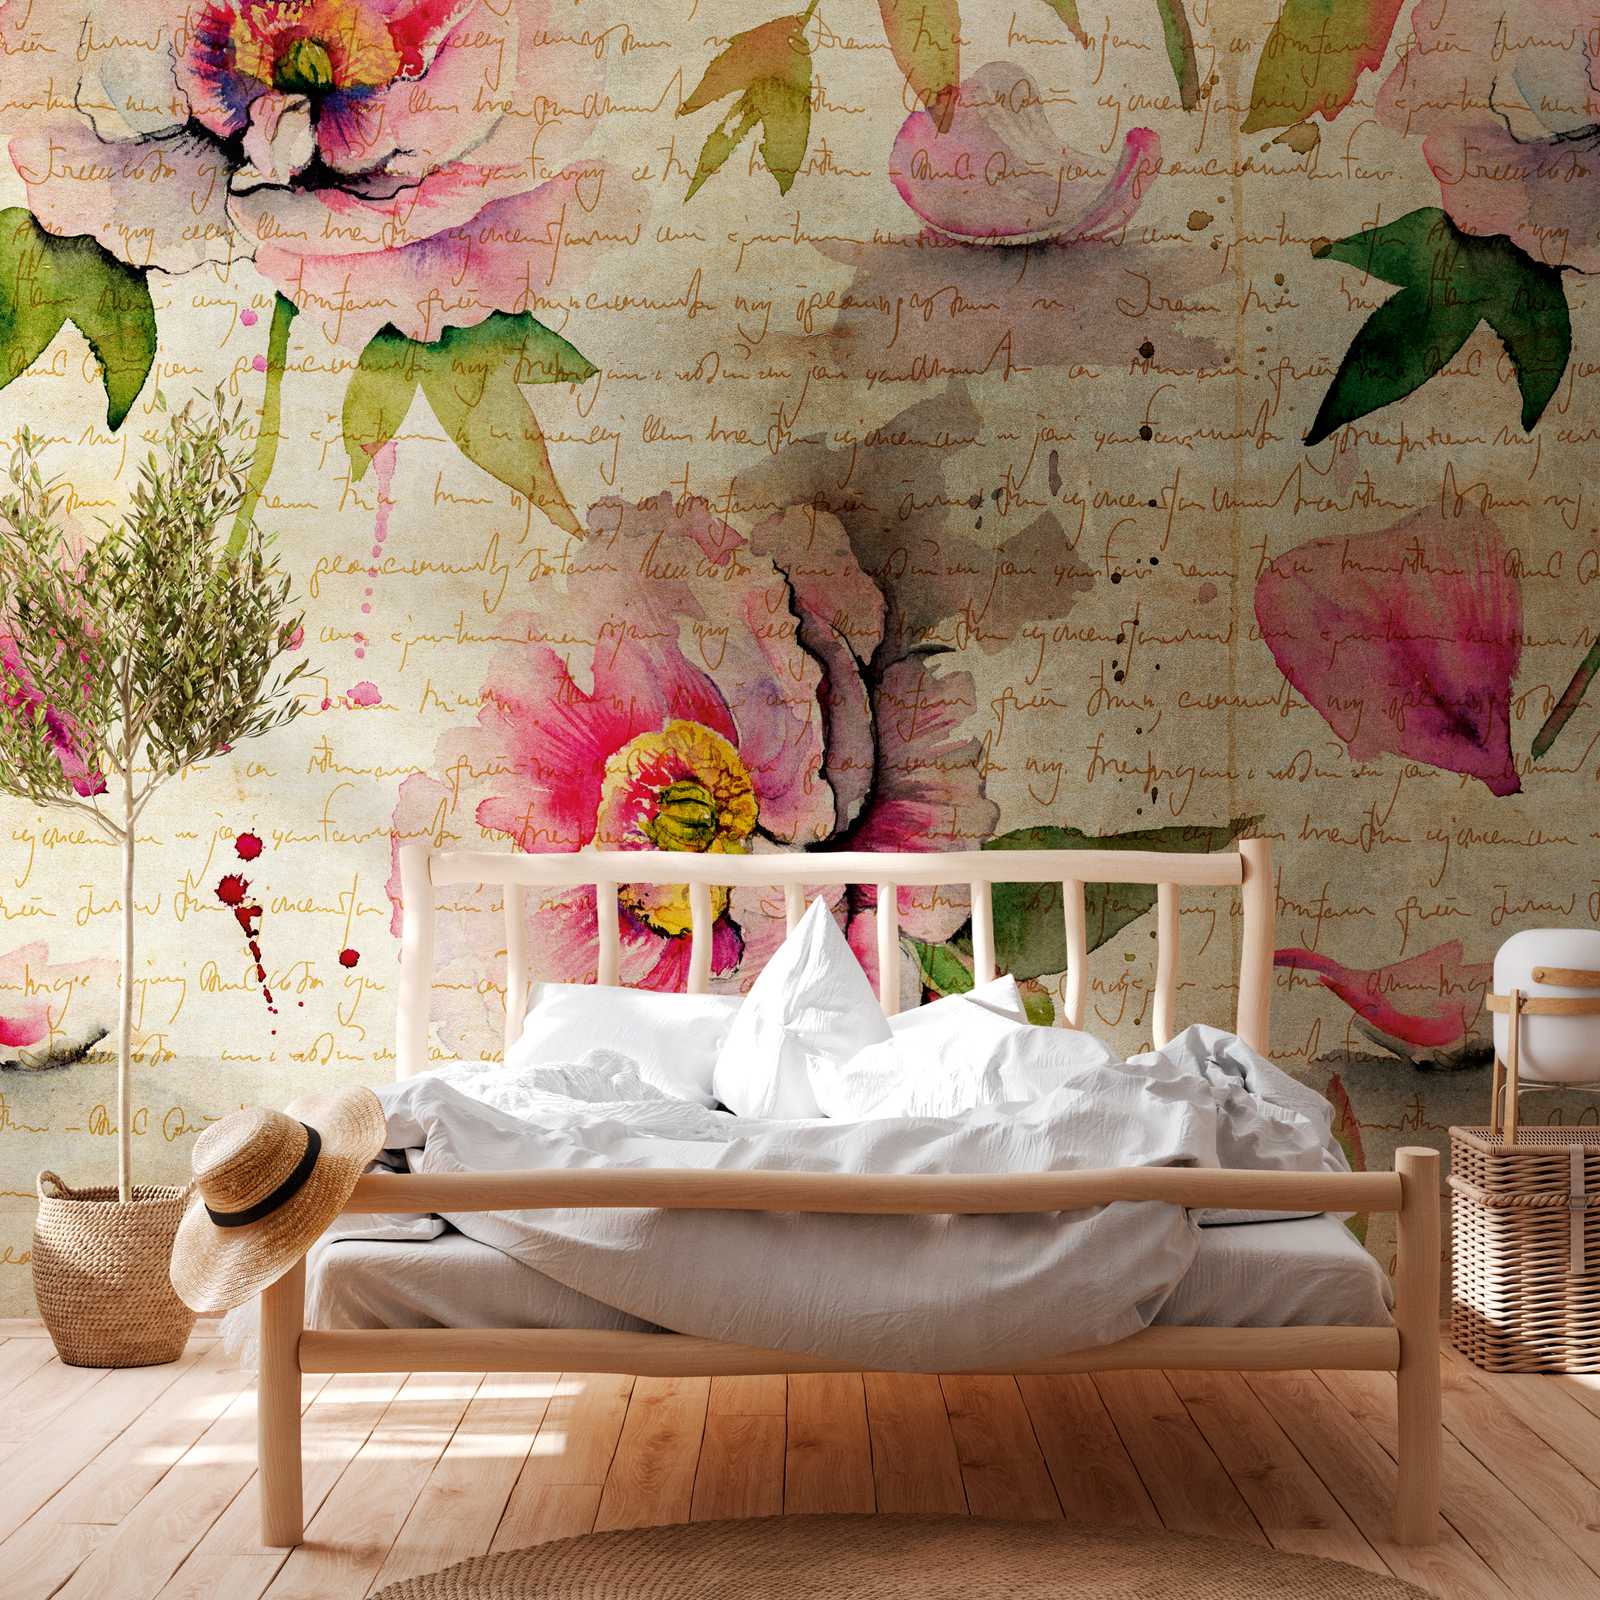             Behang nieuwigheid - rozen motief behang vintage & cottage core stijl
        